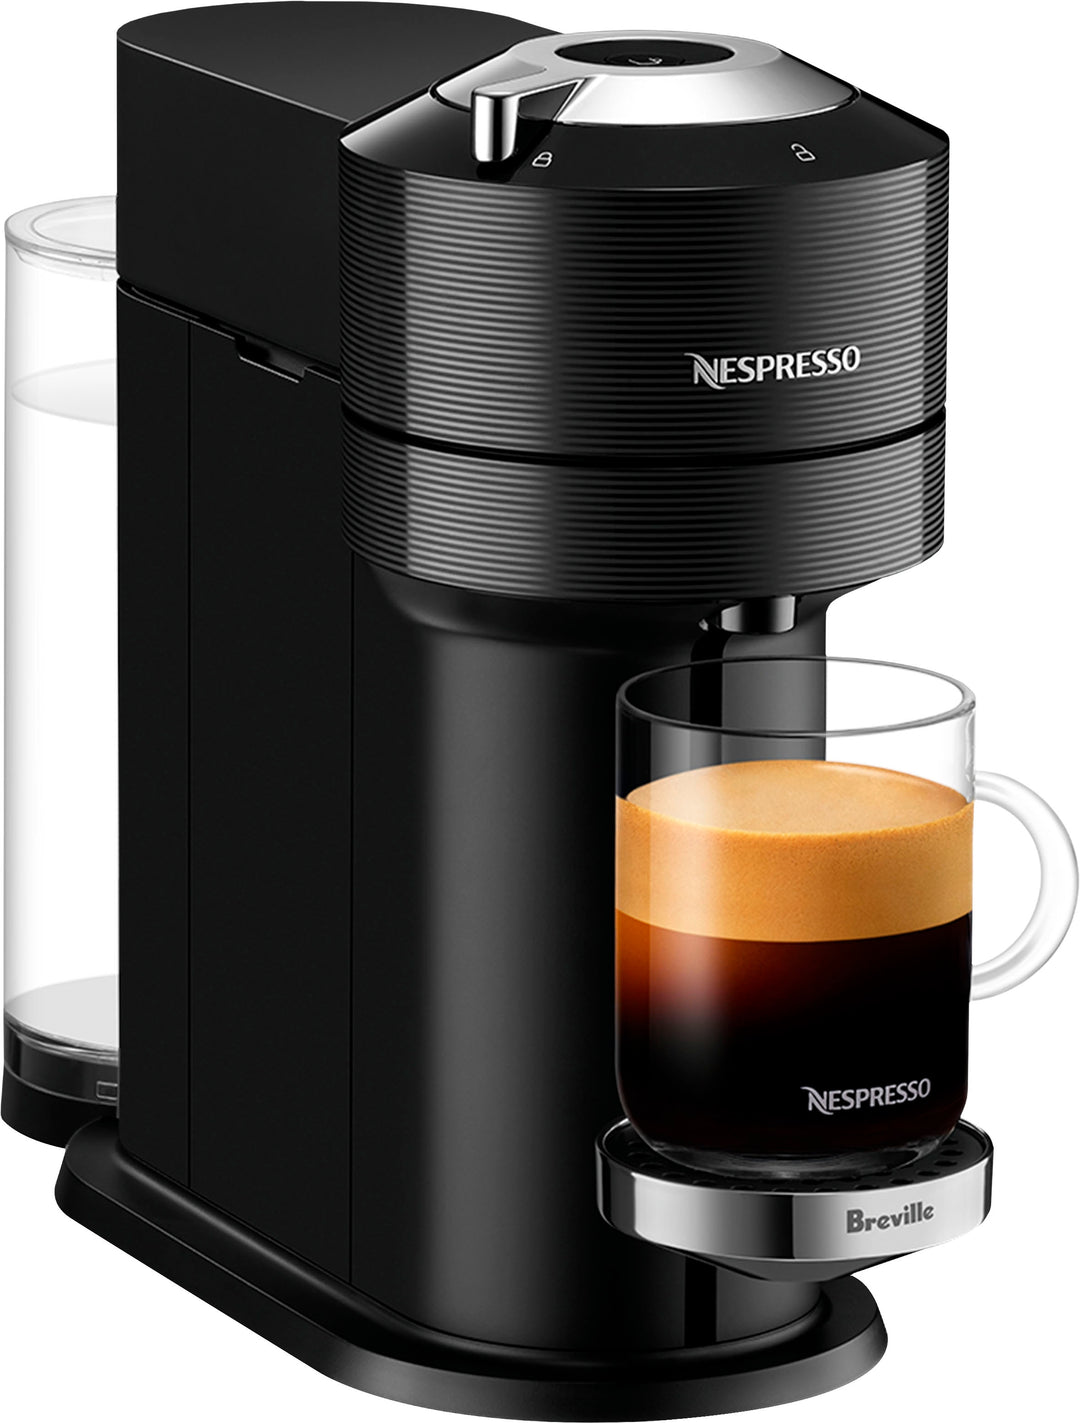 Nespresso - Vertuo Next Premium Classic Black by Breville with Aeroccino3 - Classic Black_4